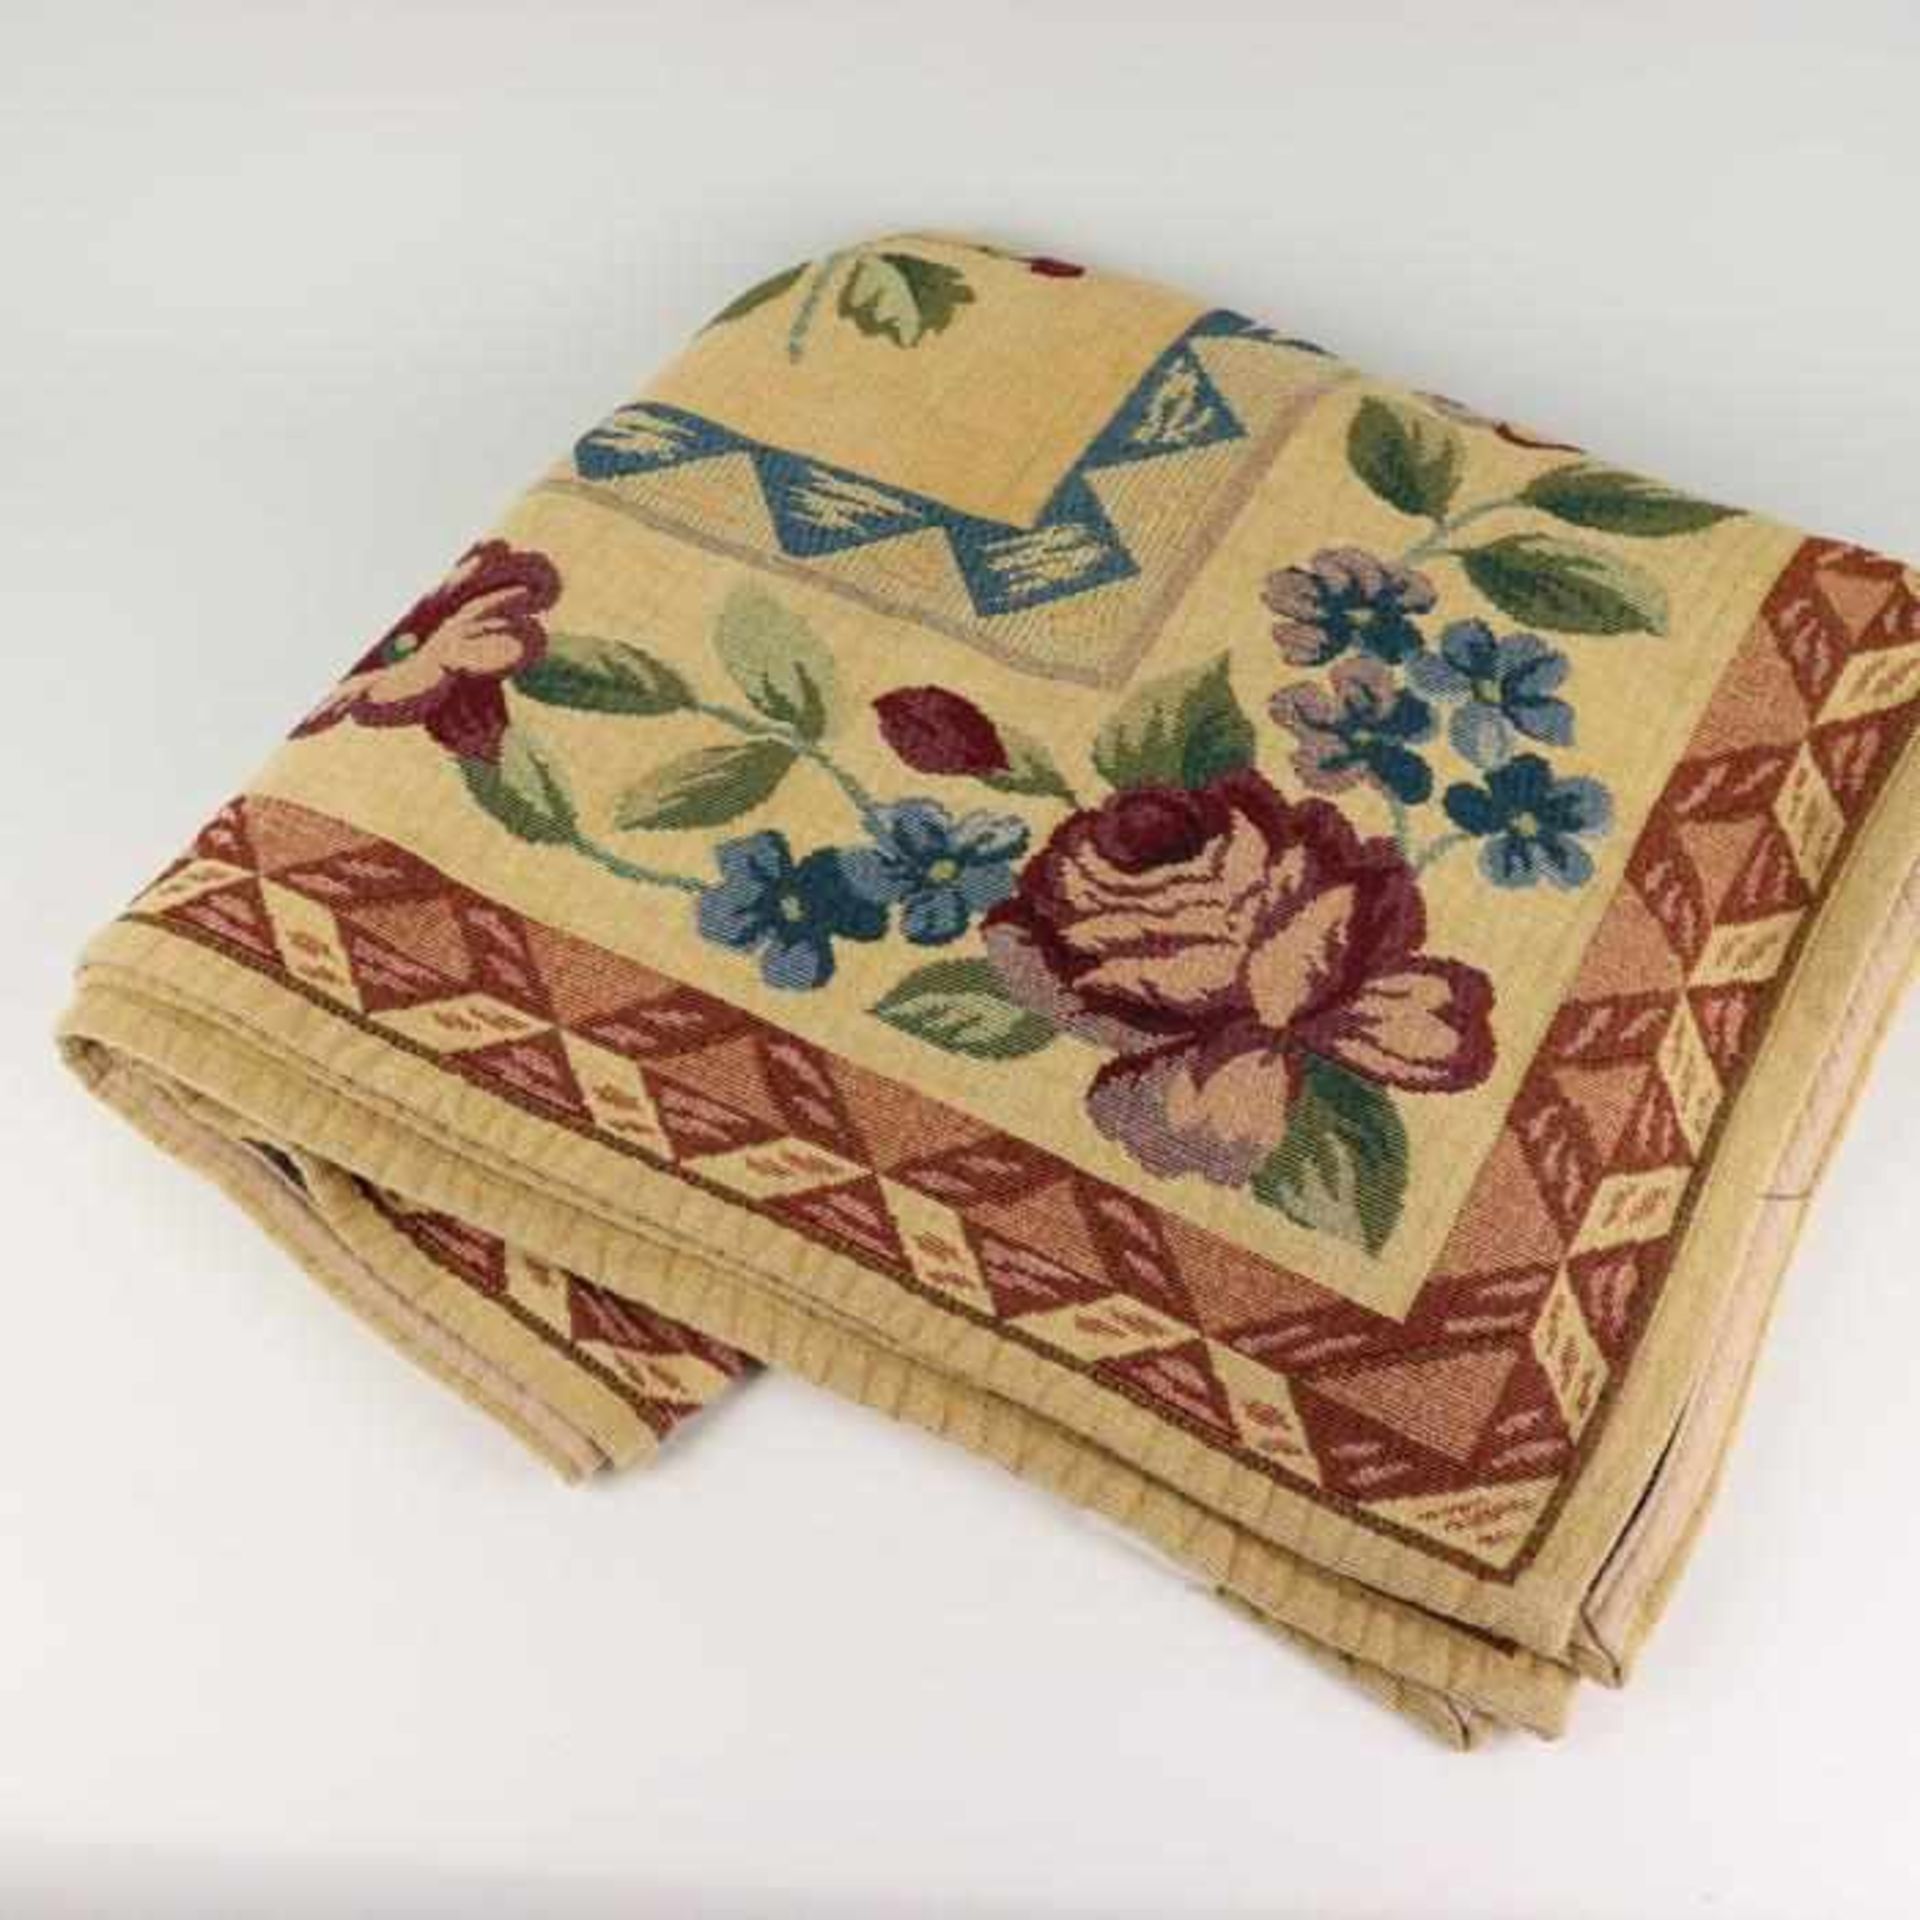 TischdeckeItalien, Baumwolle/Polyester, Jacquard, beigegrundig, blau, rot, grünes Floralmuster, - Bild 2 aus 2